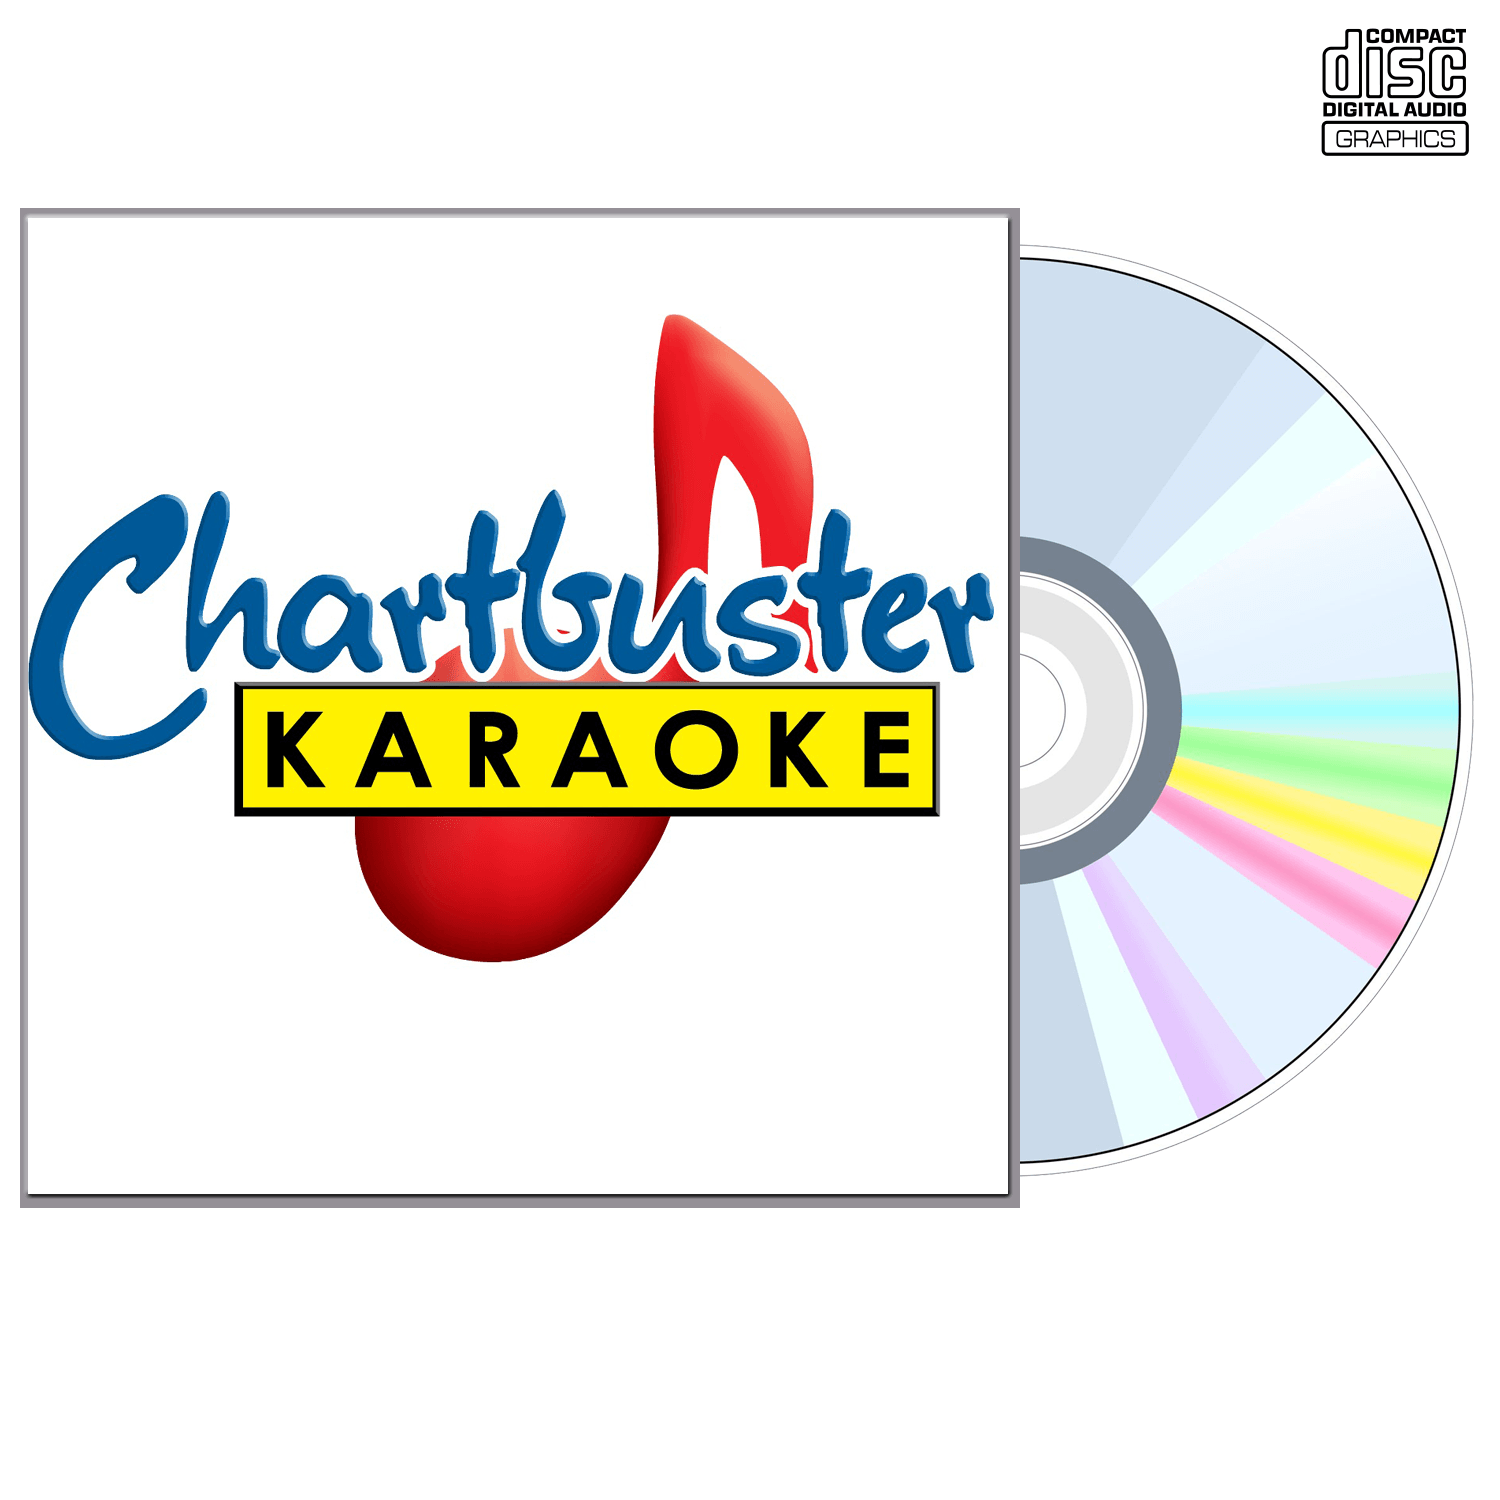 Mens 2010-2011 Vol 1 - CD+G - Chartbuster Karaoke - Karaoke Home Entertainment